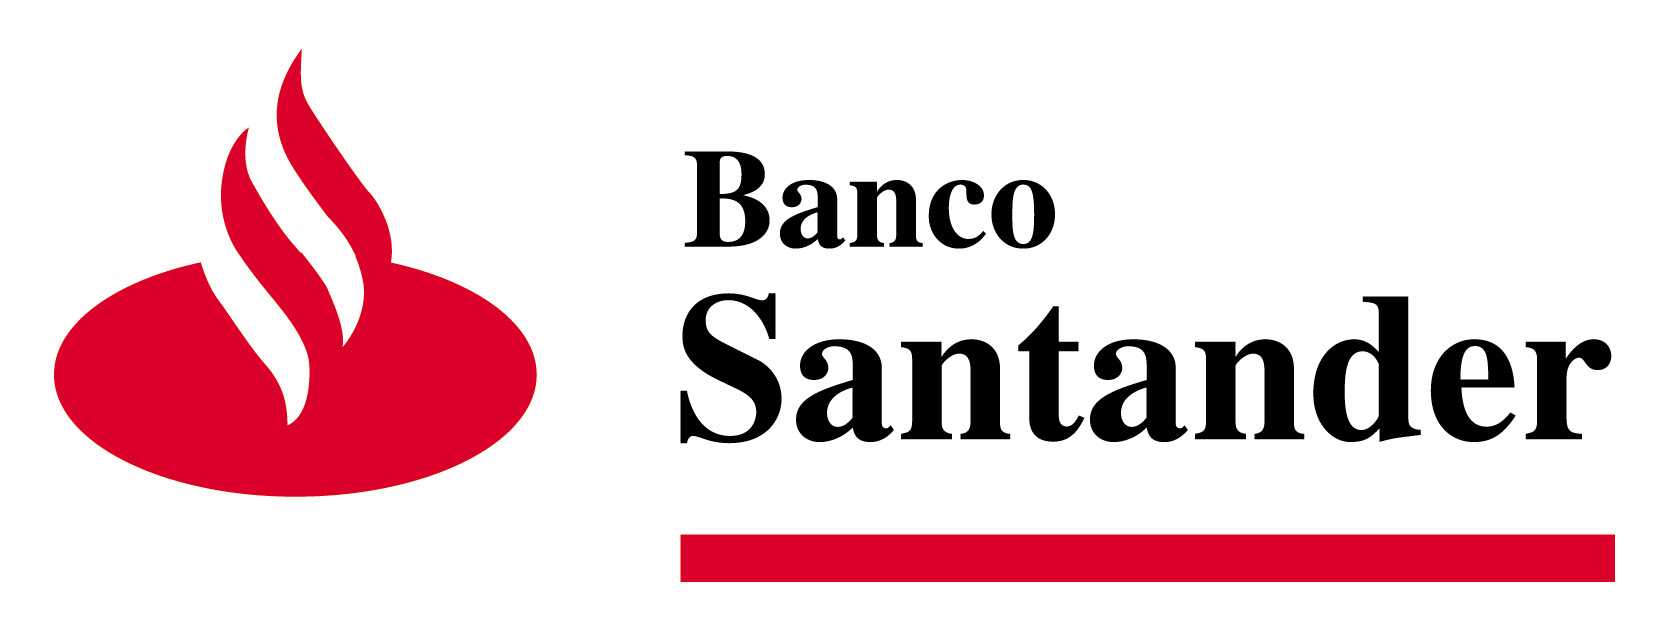 Santander Bank Logo - Santander Partners With Supply Chain Finance Start-up Tradeshift ...